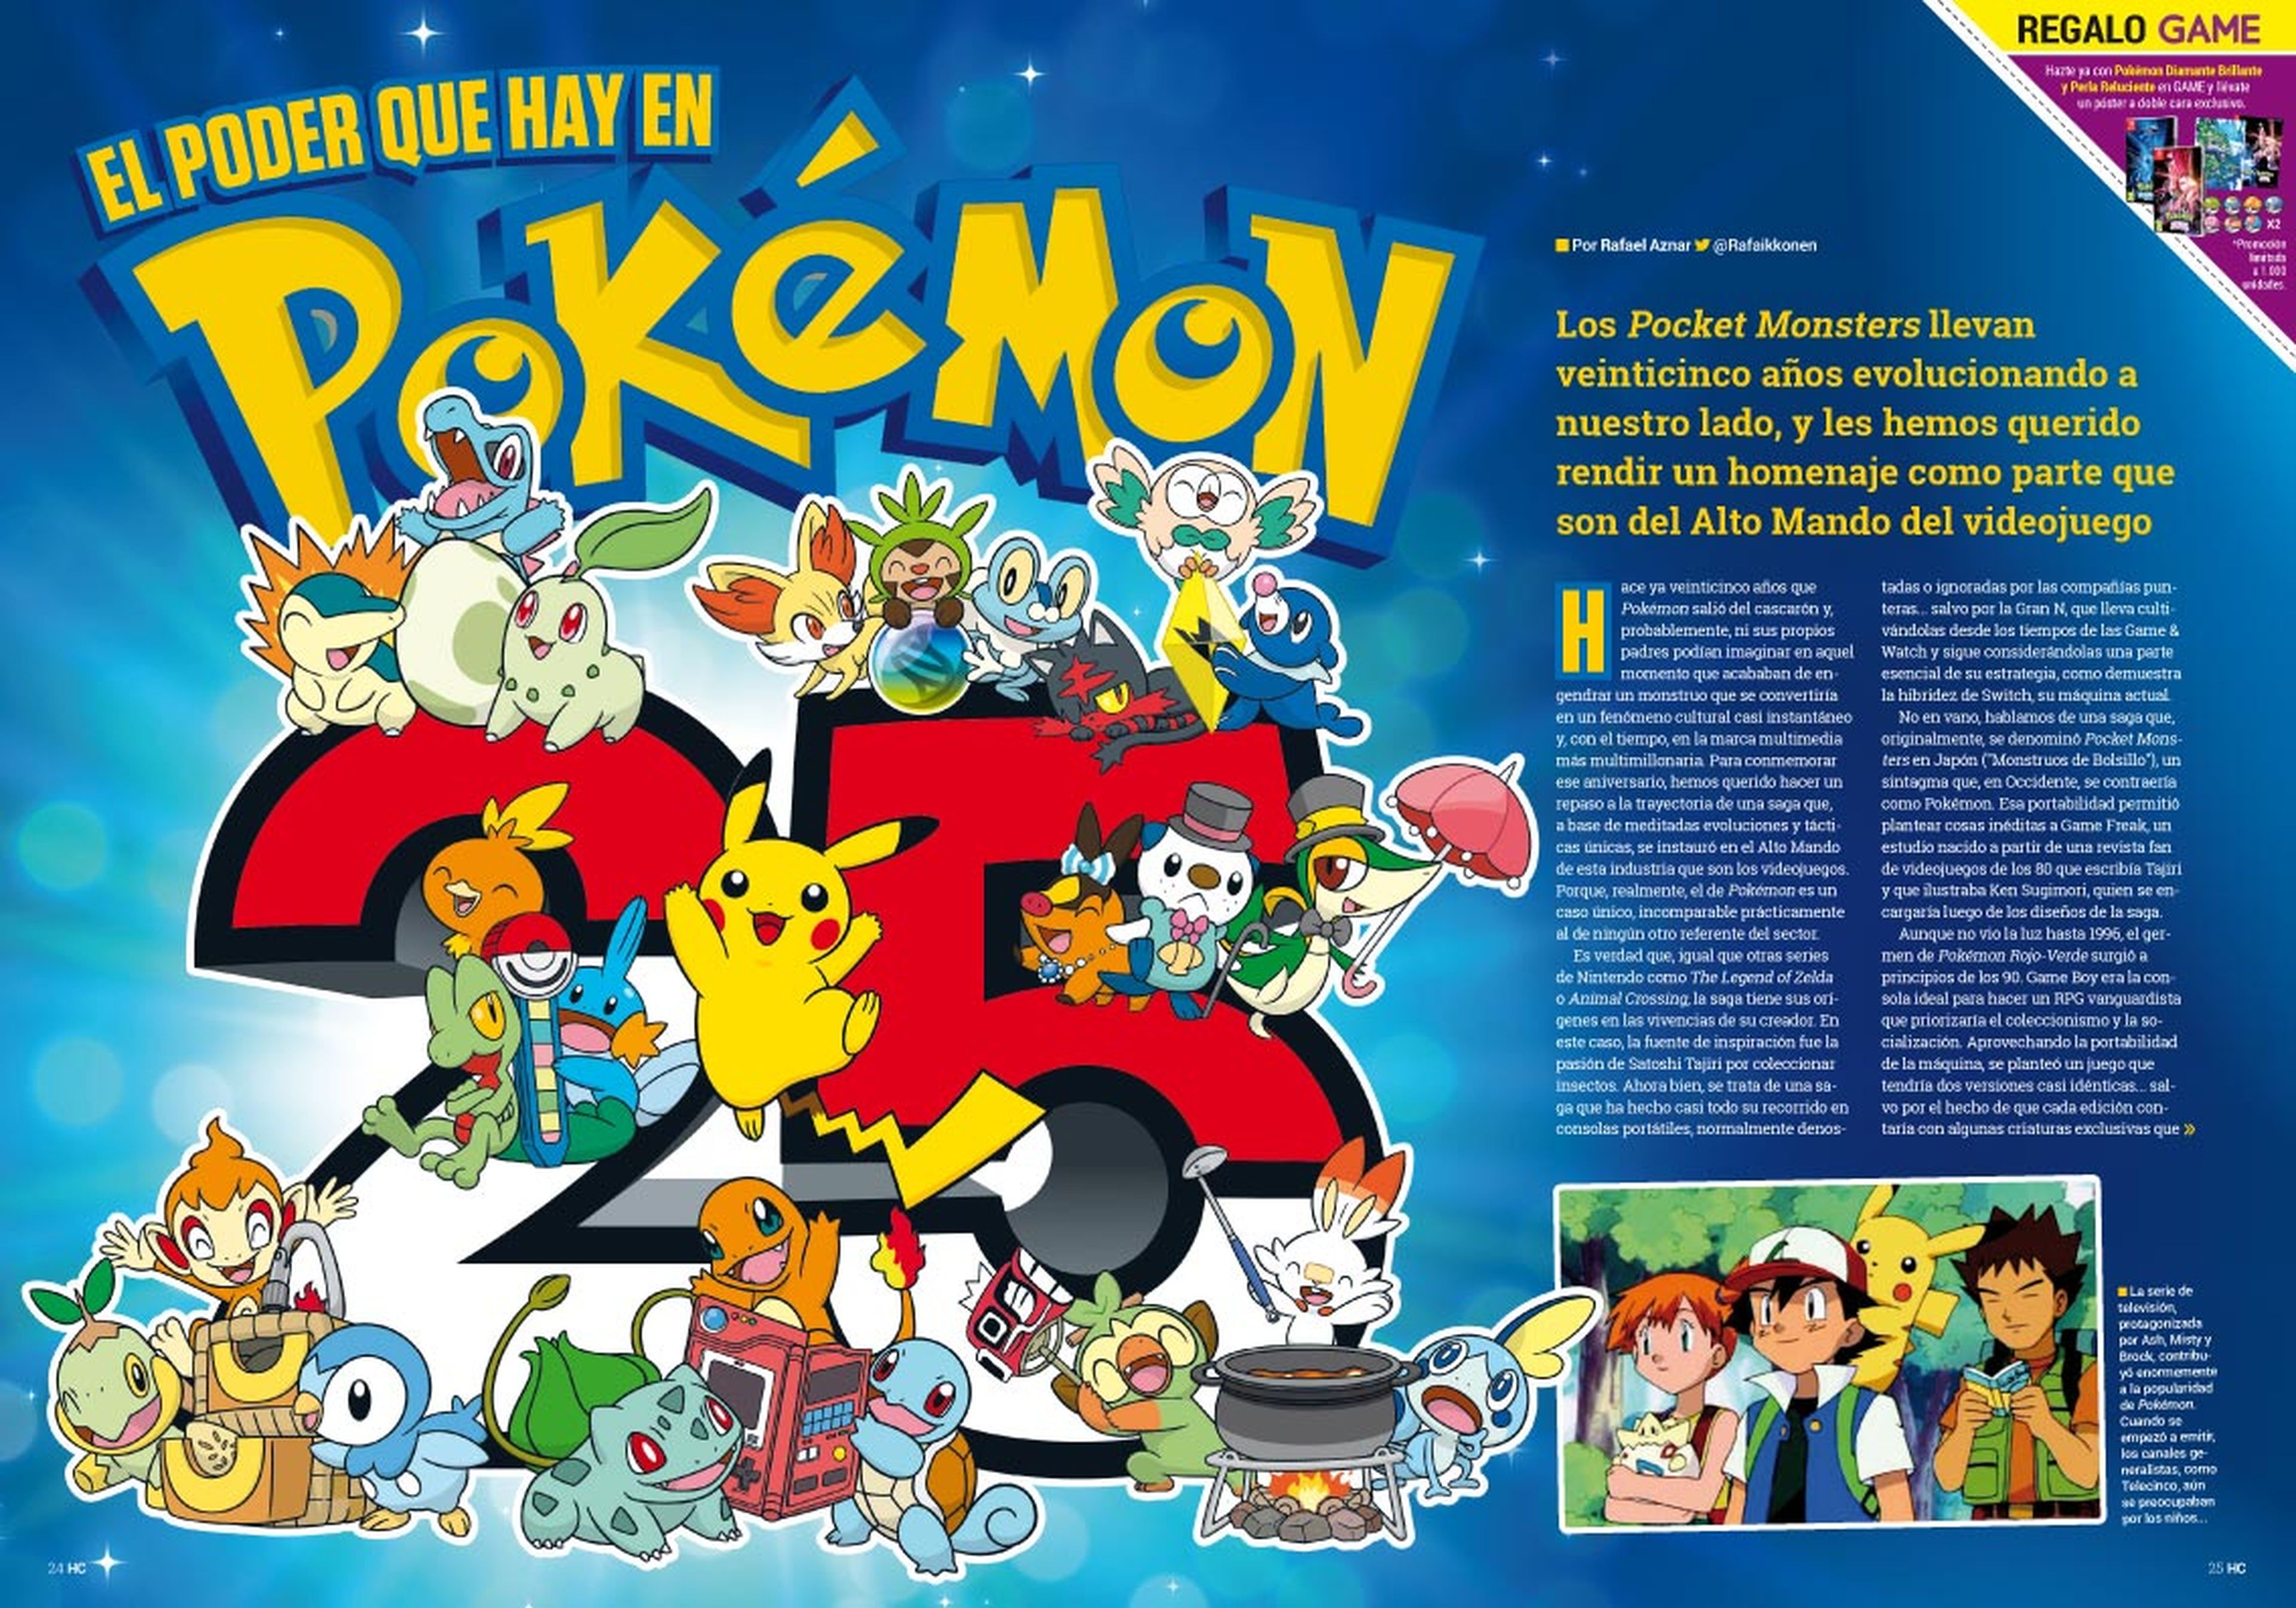 Hobby Consolas 365, ya a la venta con el 25º aniversario de Pokémon en portada